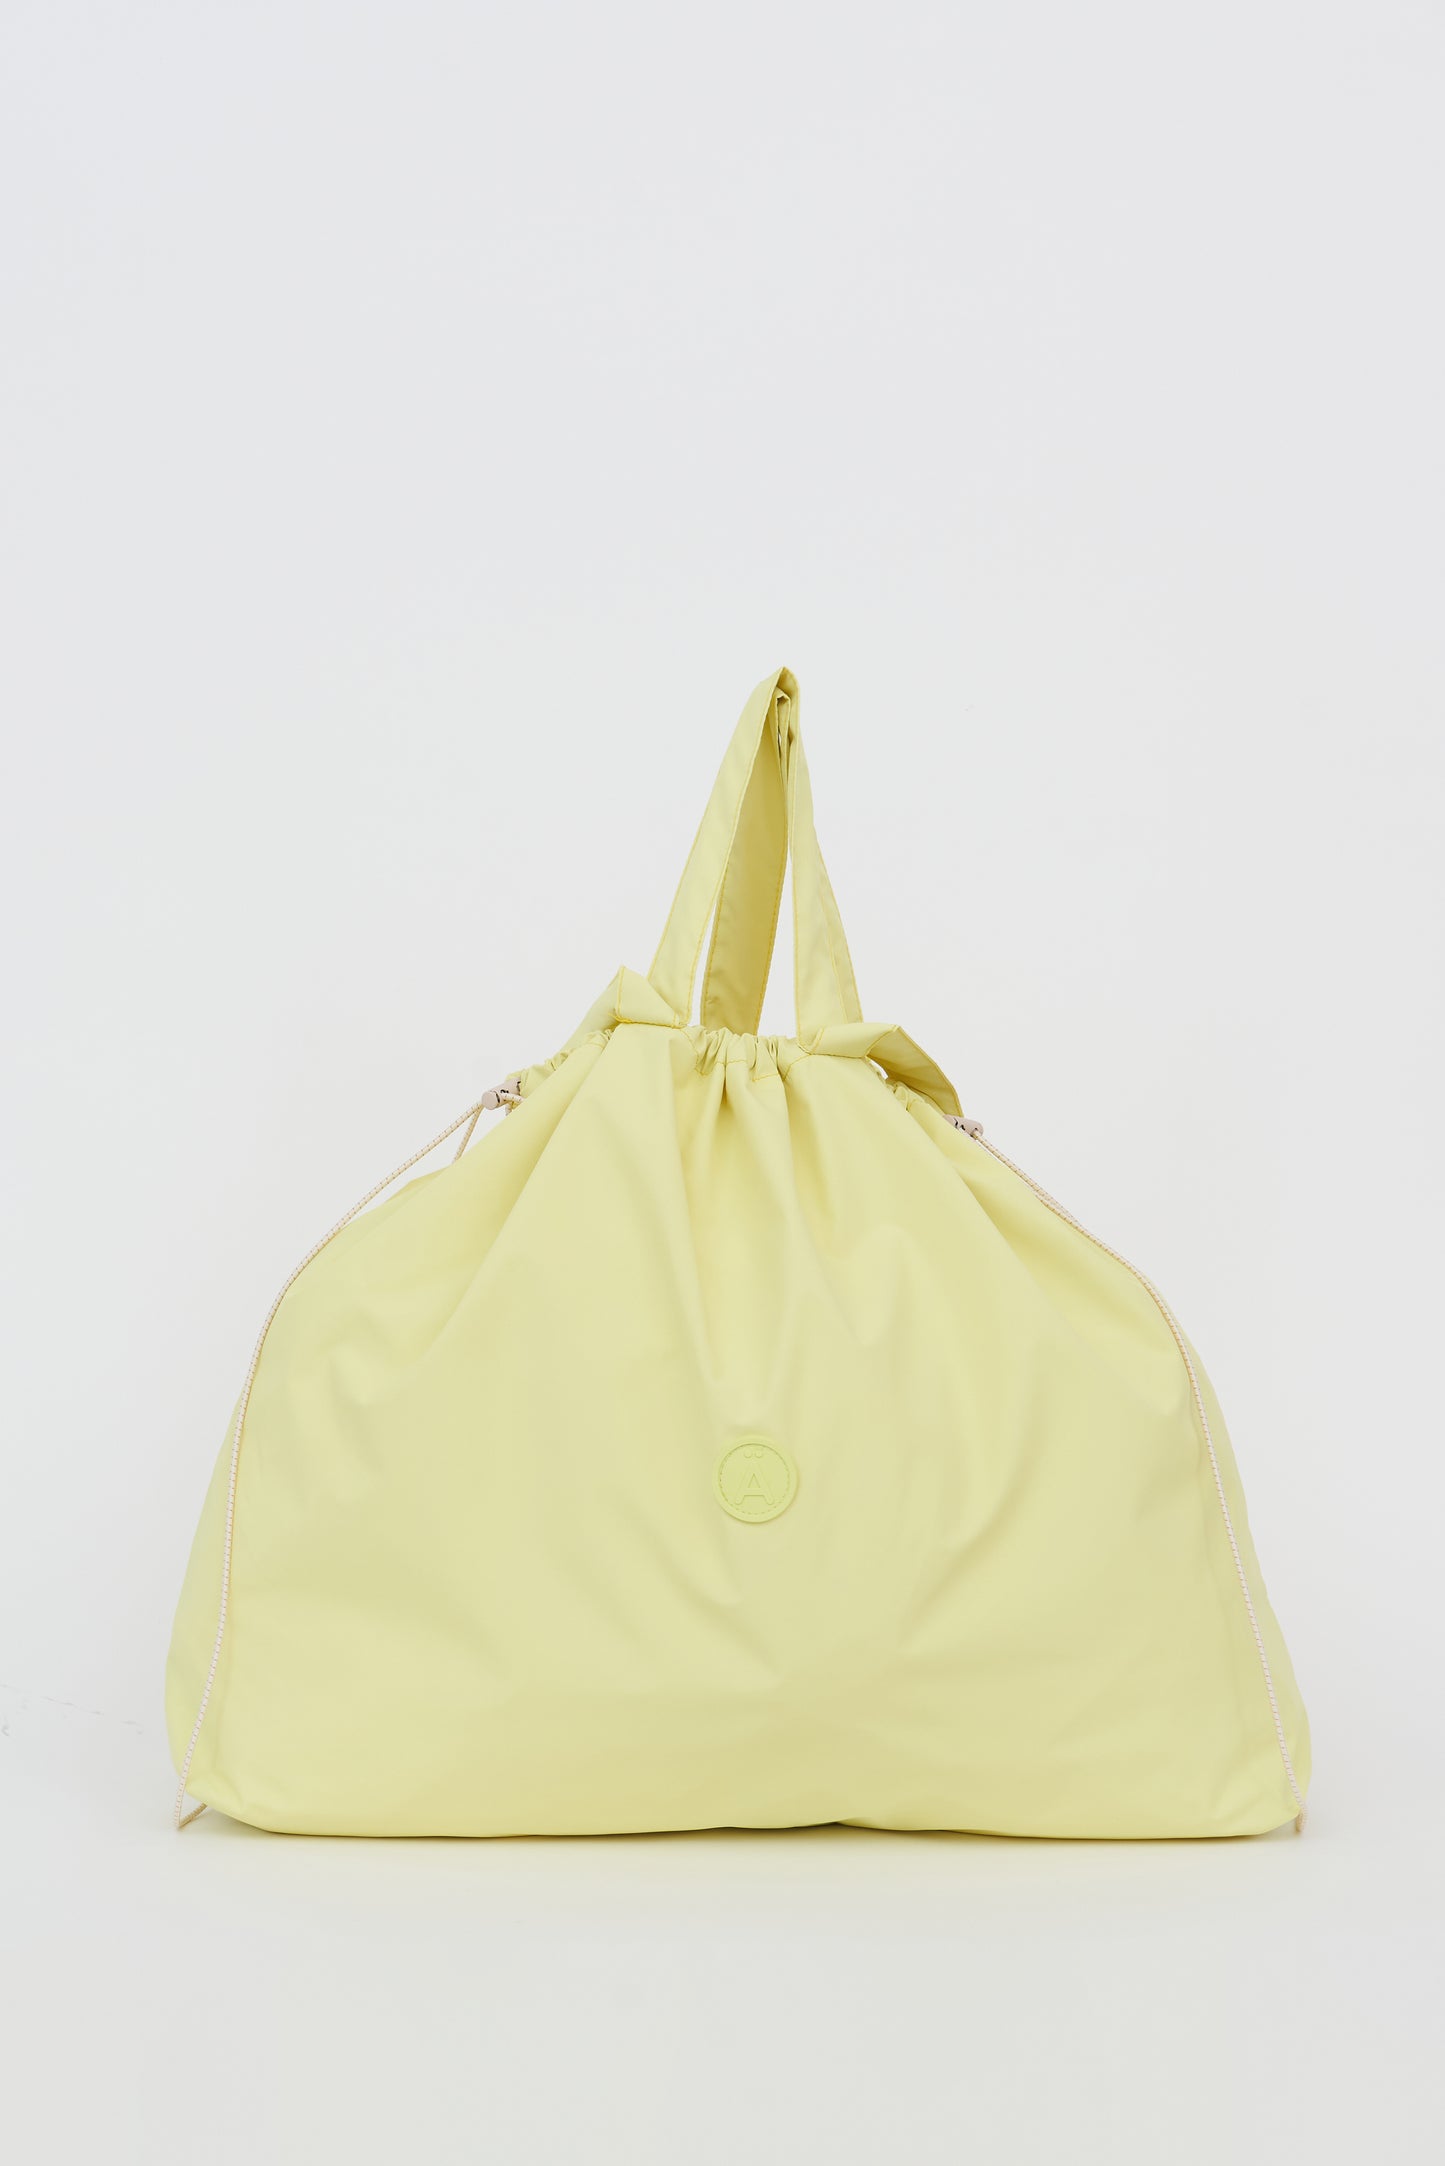 Imvula Waterproof Bag - Elfin Yellow